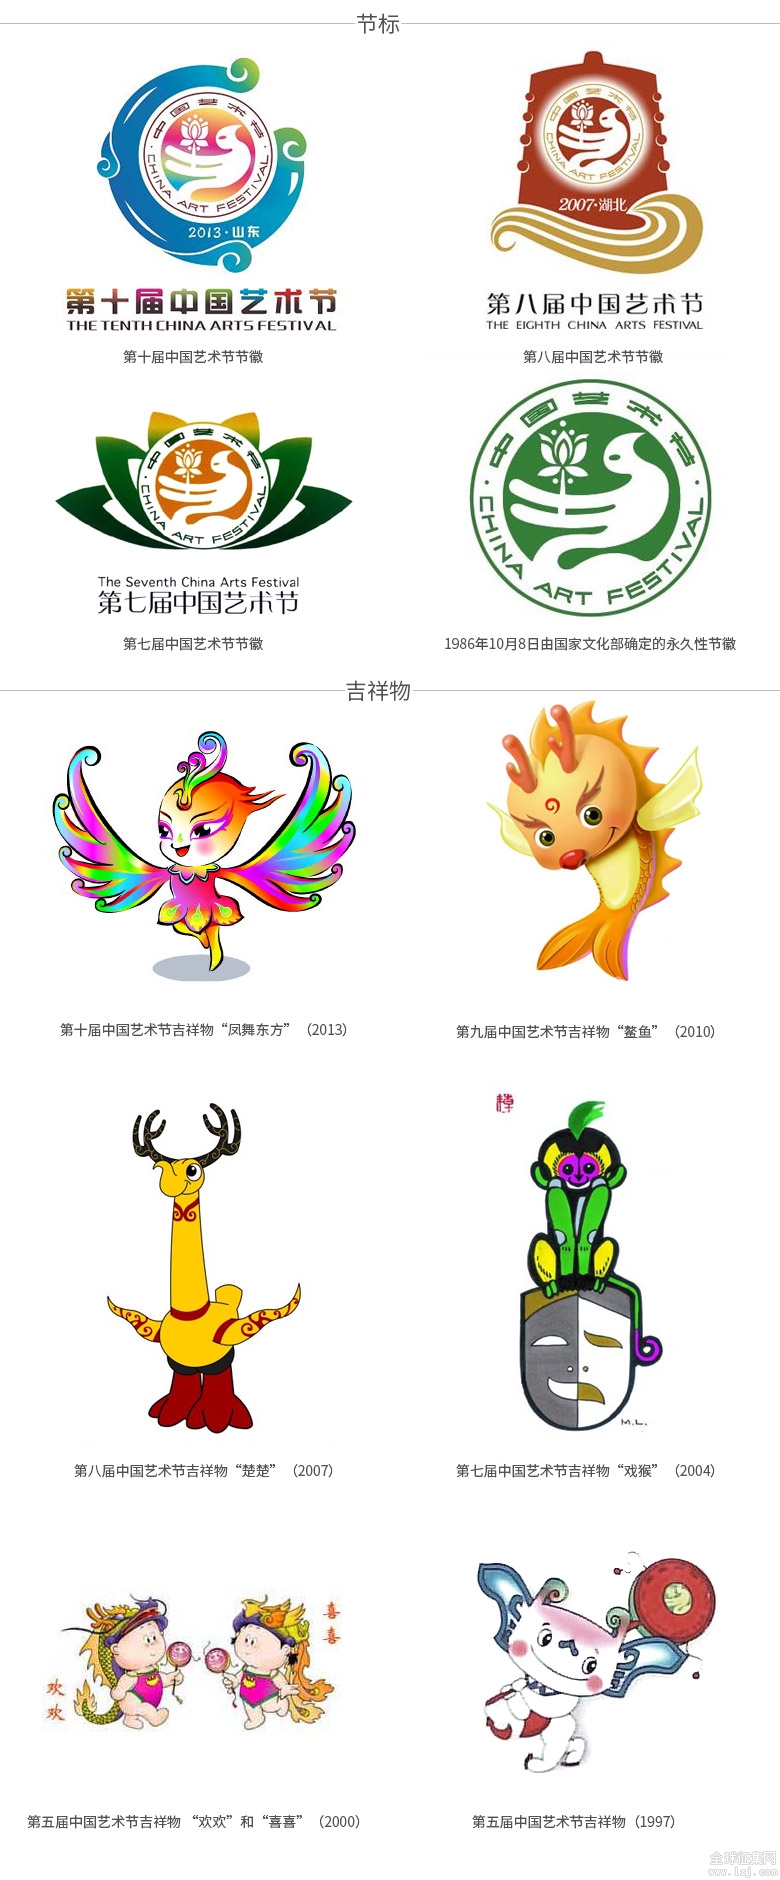 语文文化节吉祥物图片图片